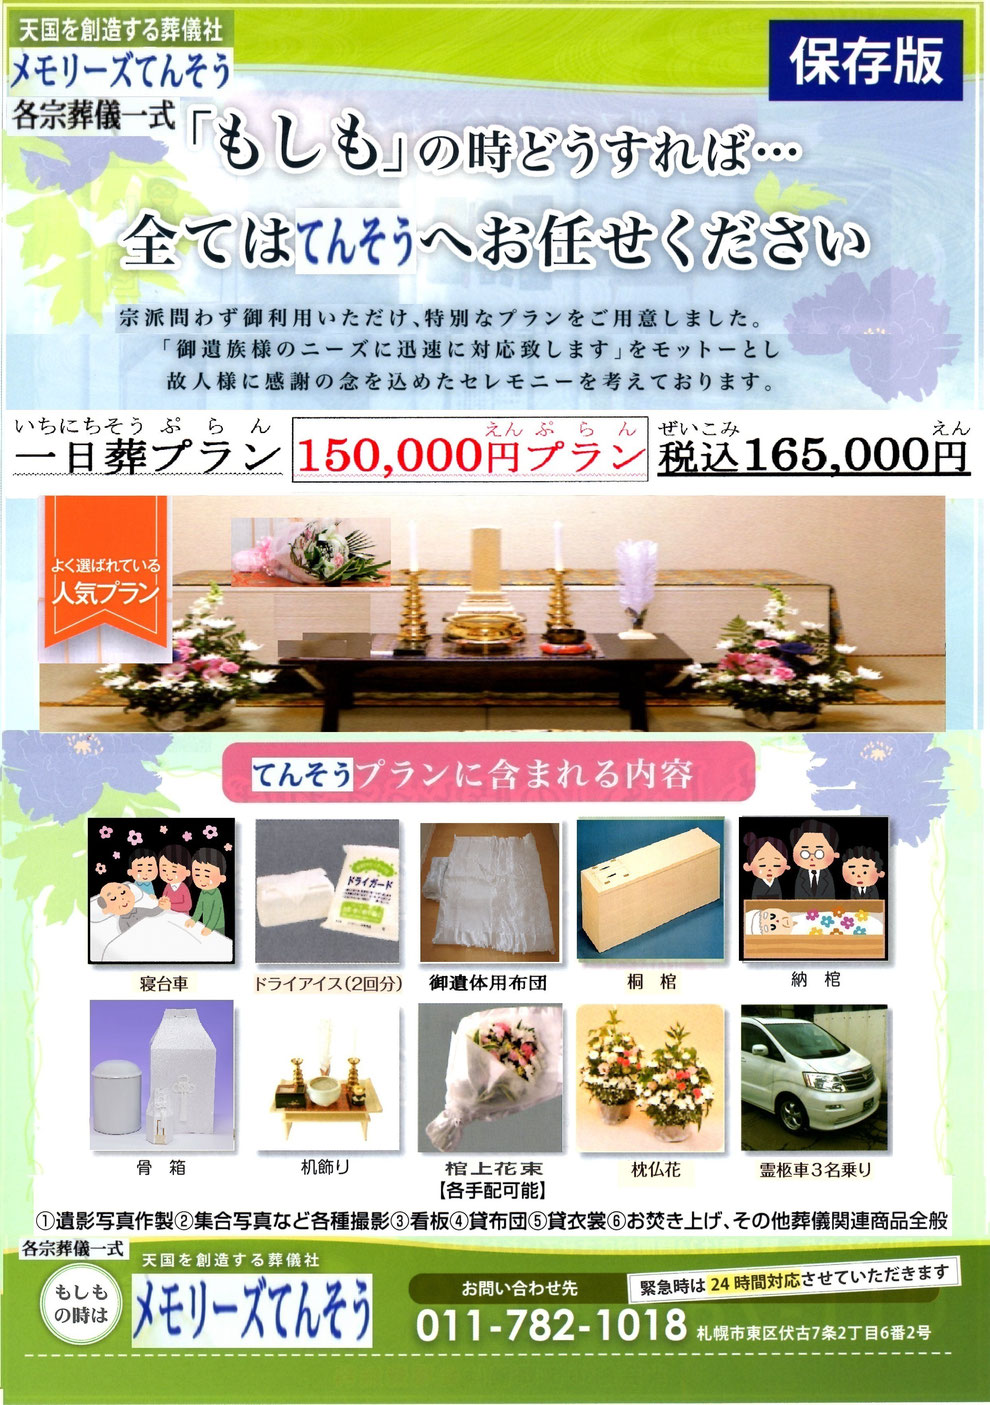 札幌家族葬メモリーズてんそう 葬儀・家族葬165,000円プラン